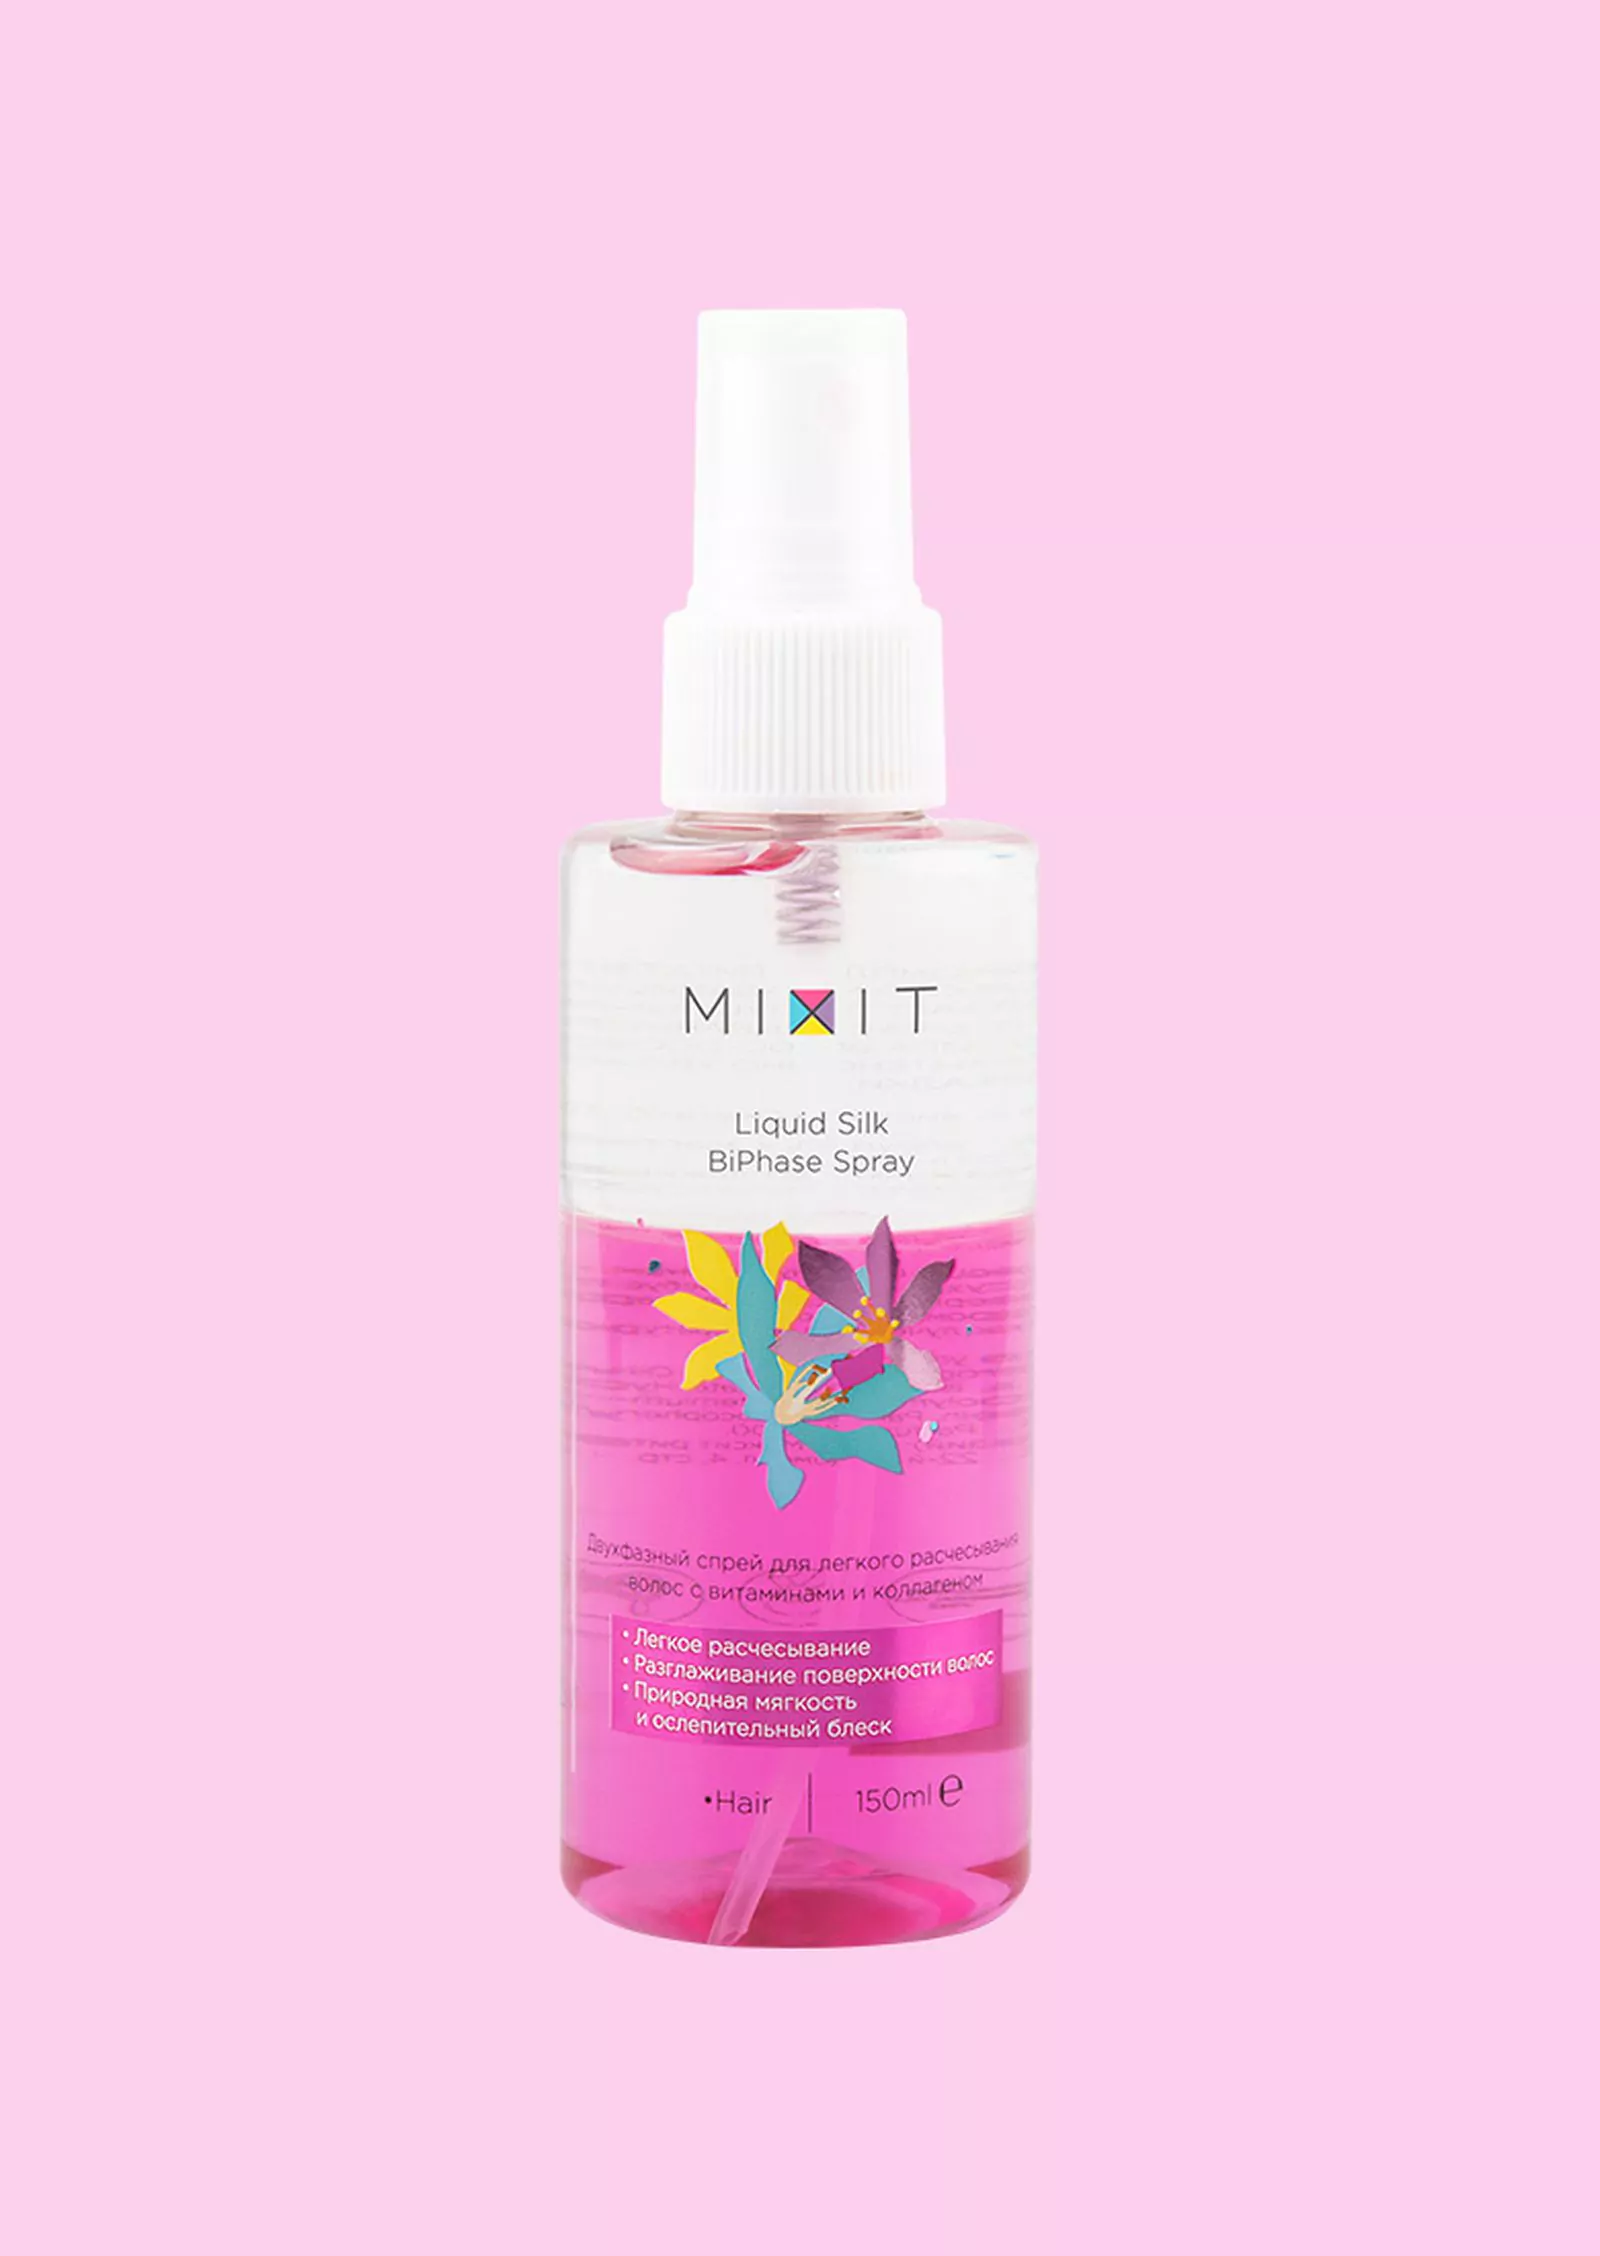 Mixit Liquid Silk BiPhase Spray